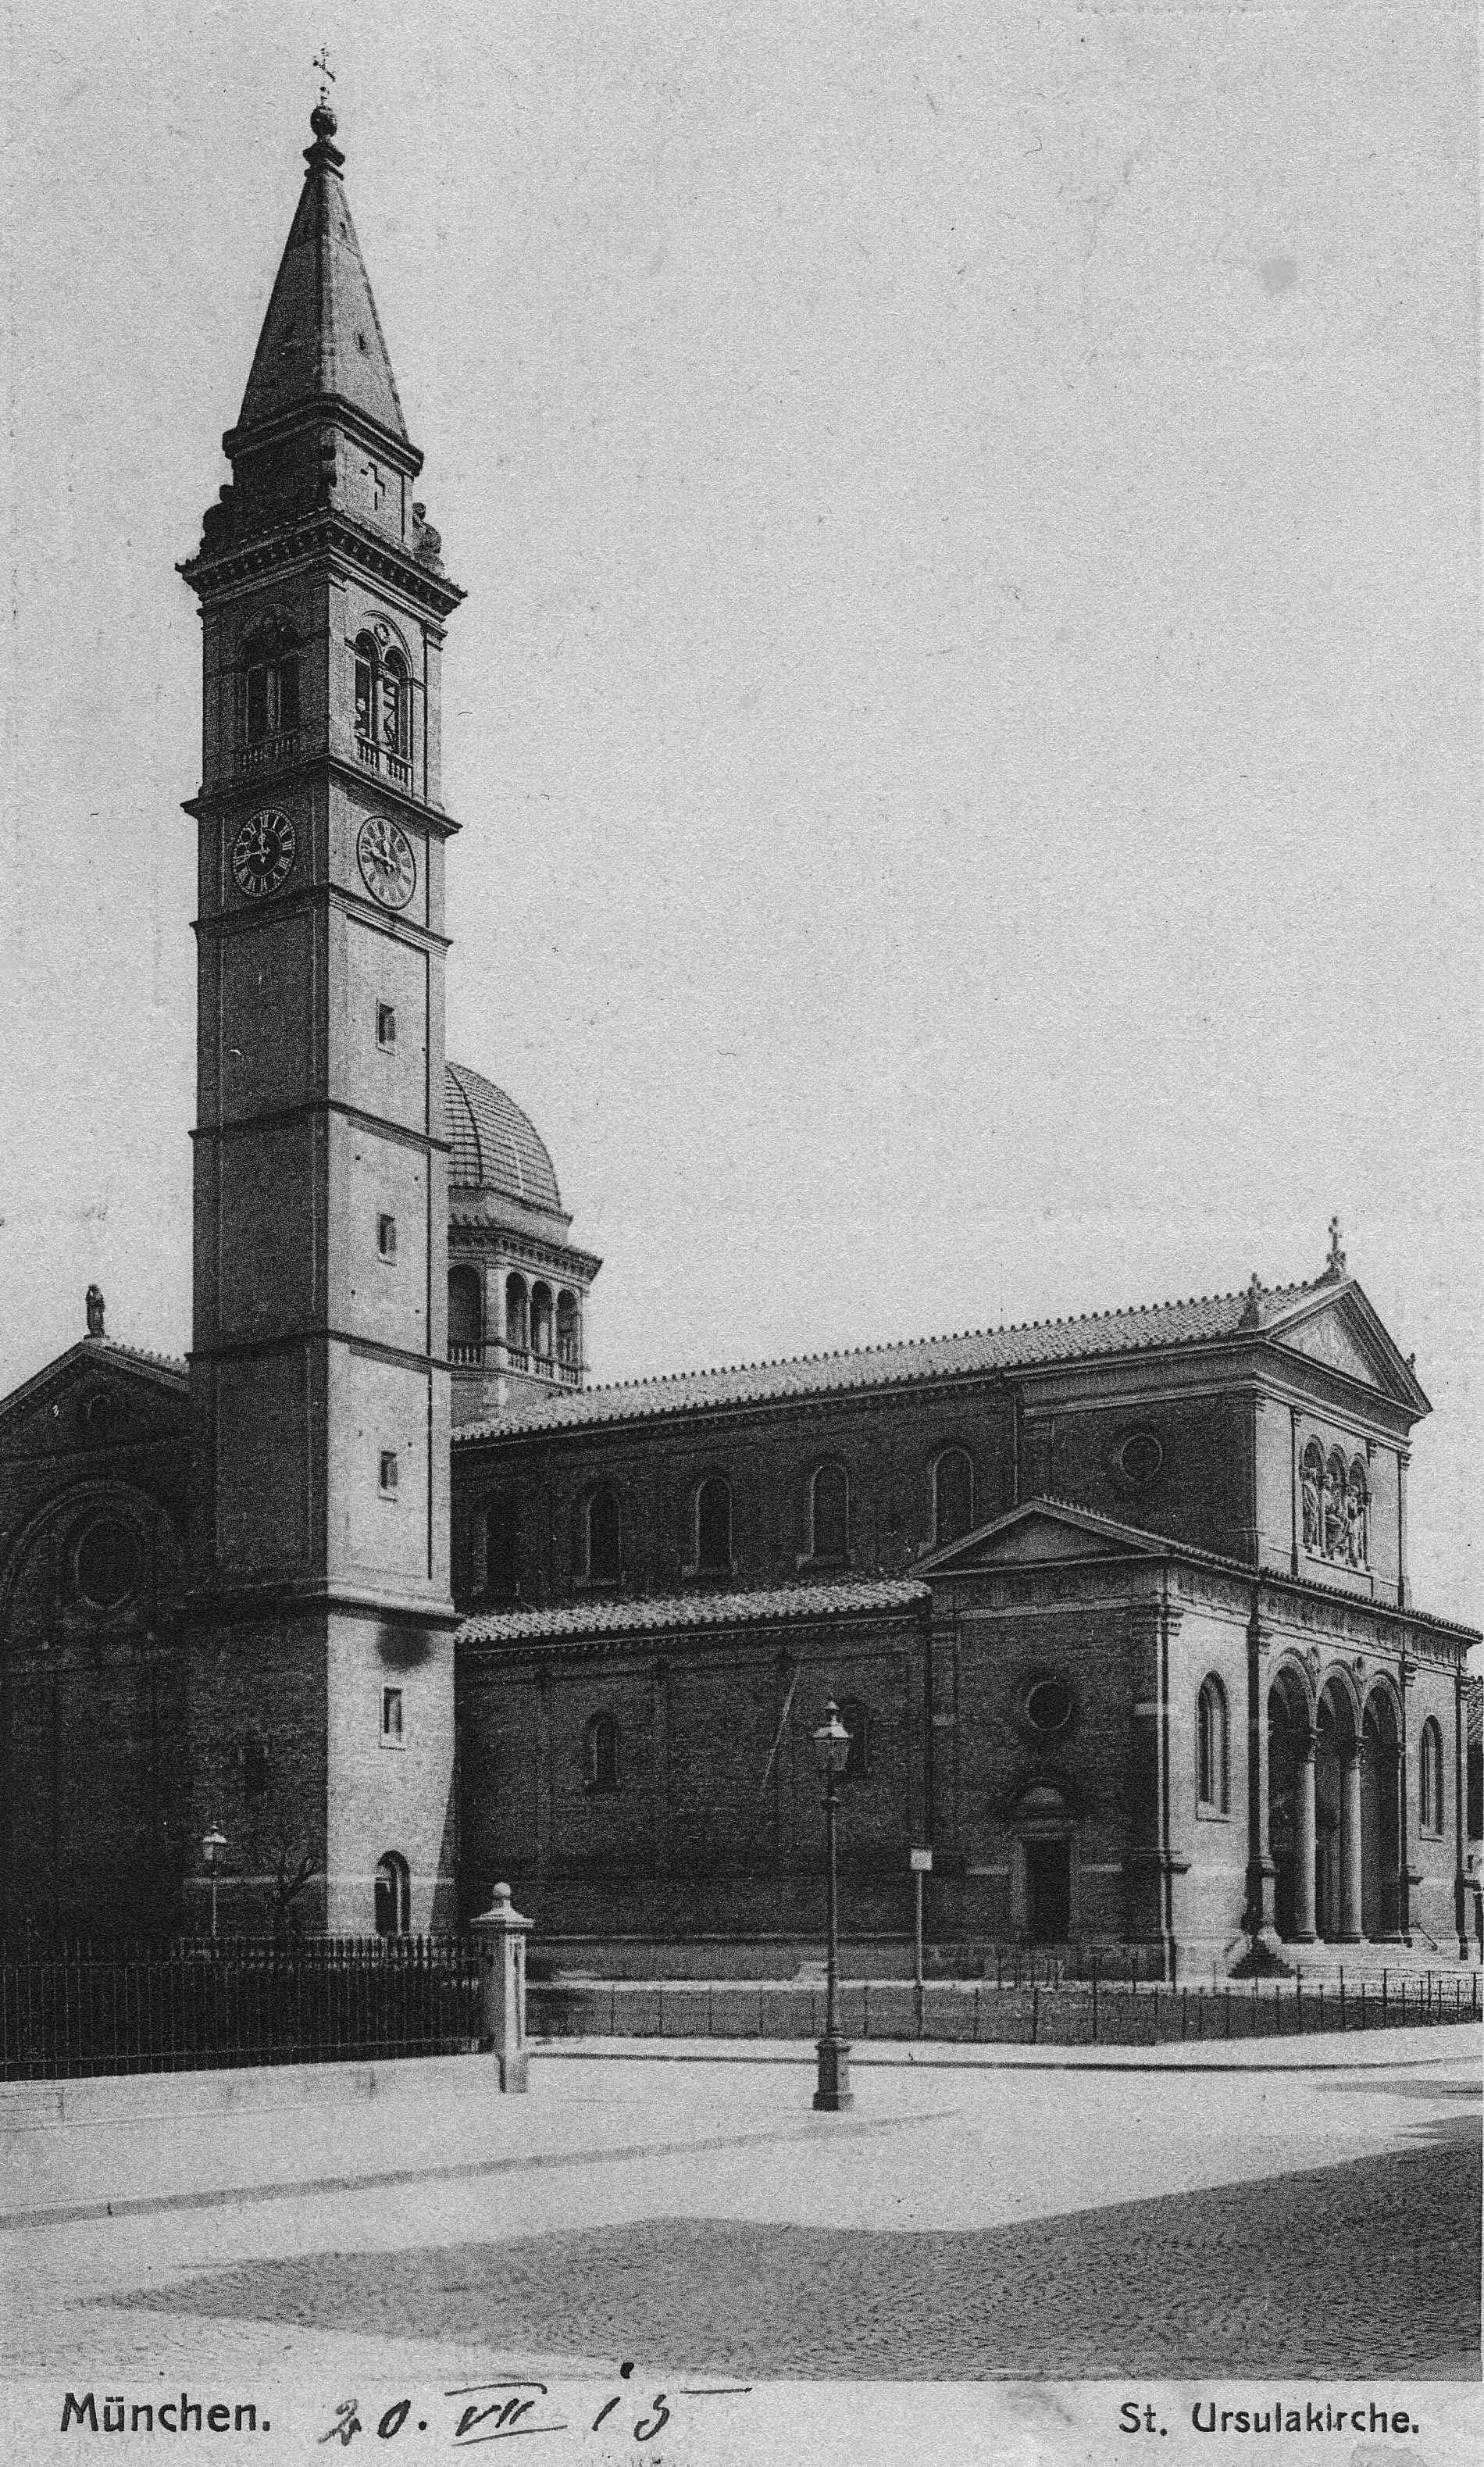 Alexander Schmorell und Willi Graf, Treffpunkt am Nachmittag des 18. Februars 1943 bei der Ursulakirche, Postkarte gelaufen 20.7.1915, Privatbesitz